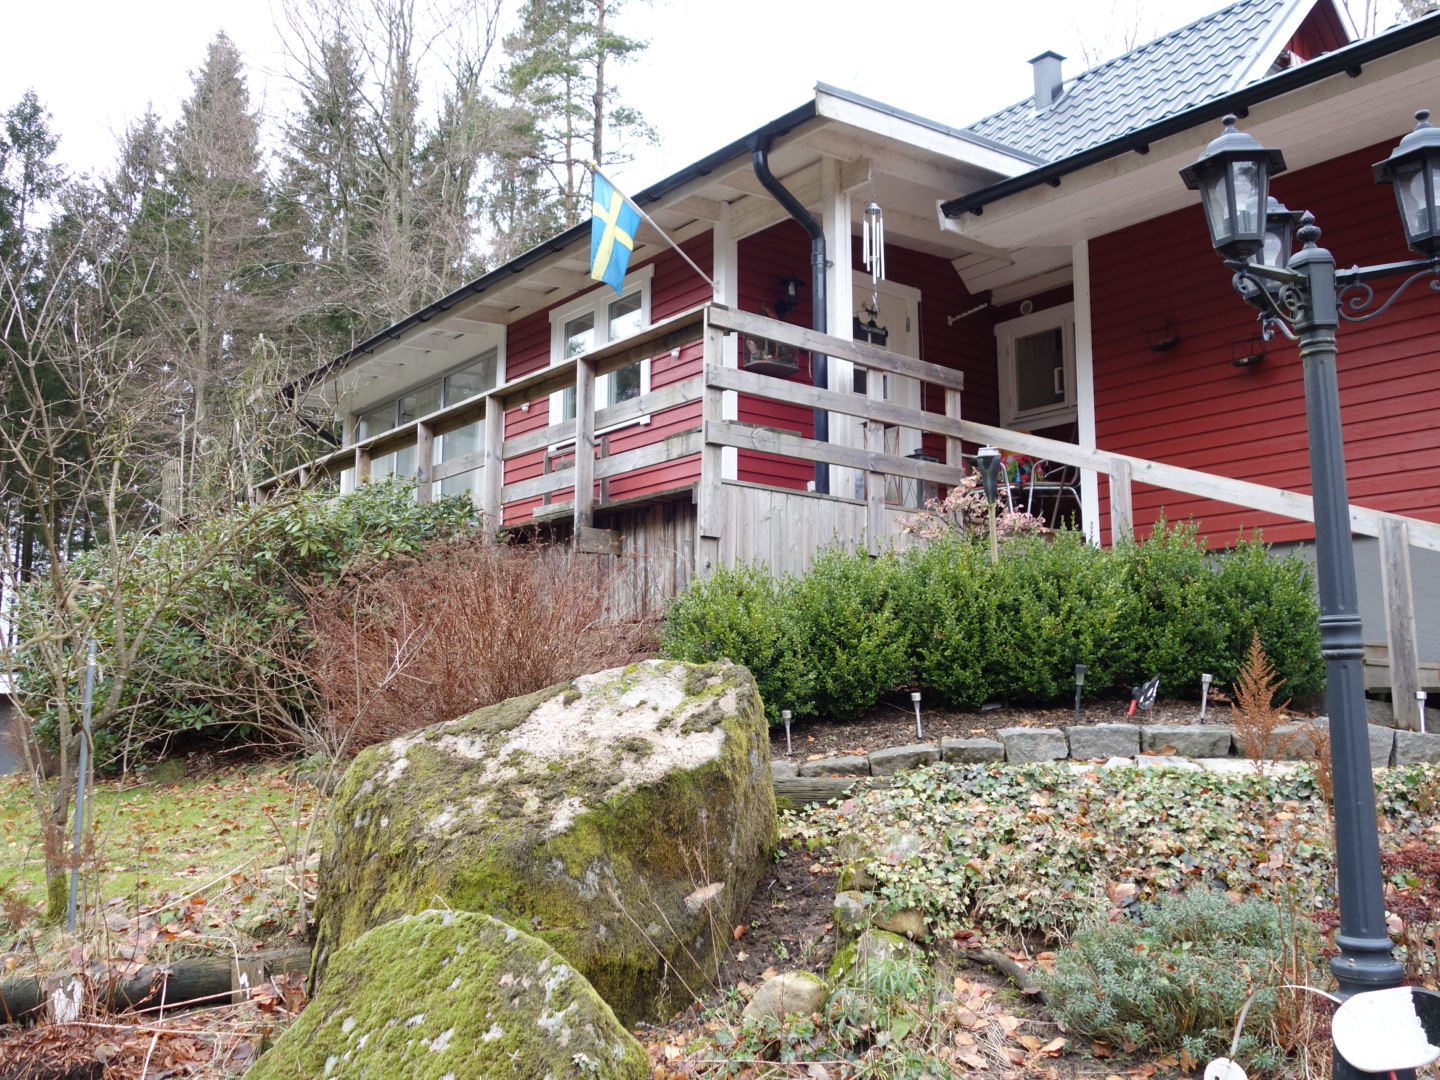 Galeriebild Ferien- oder Festwohnhaus in schöner Alleinlage im Wald zwischen Falkenberg und Torup, Provinz Halland